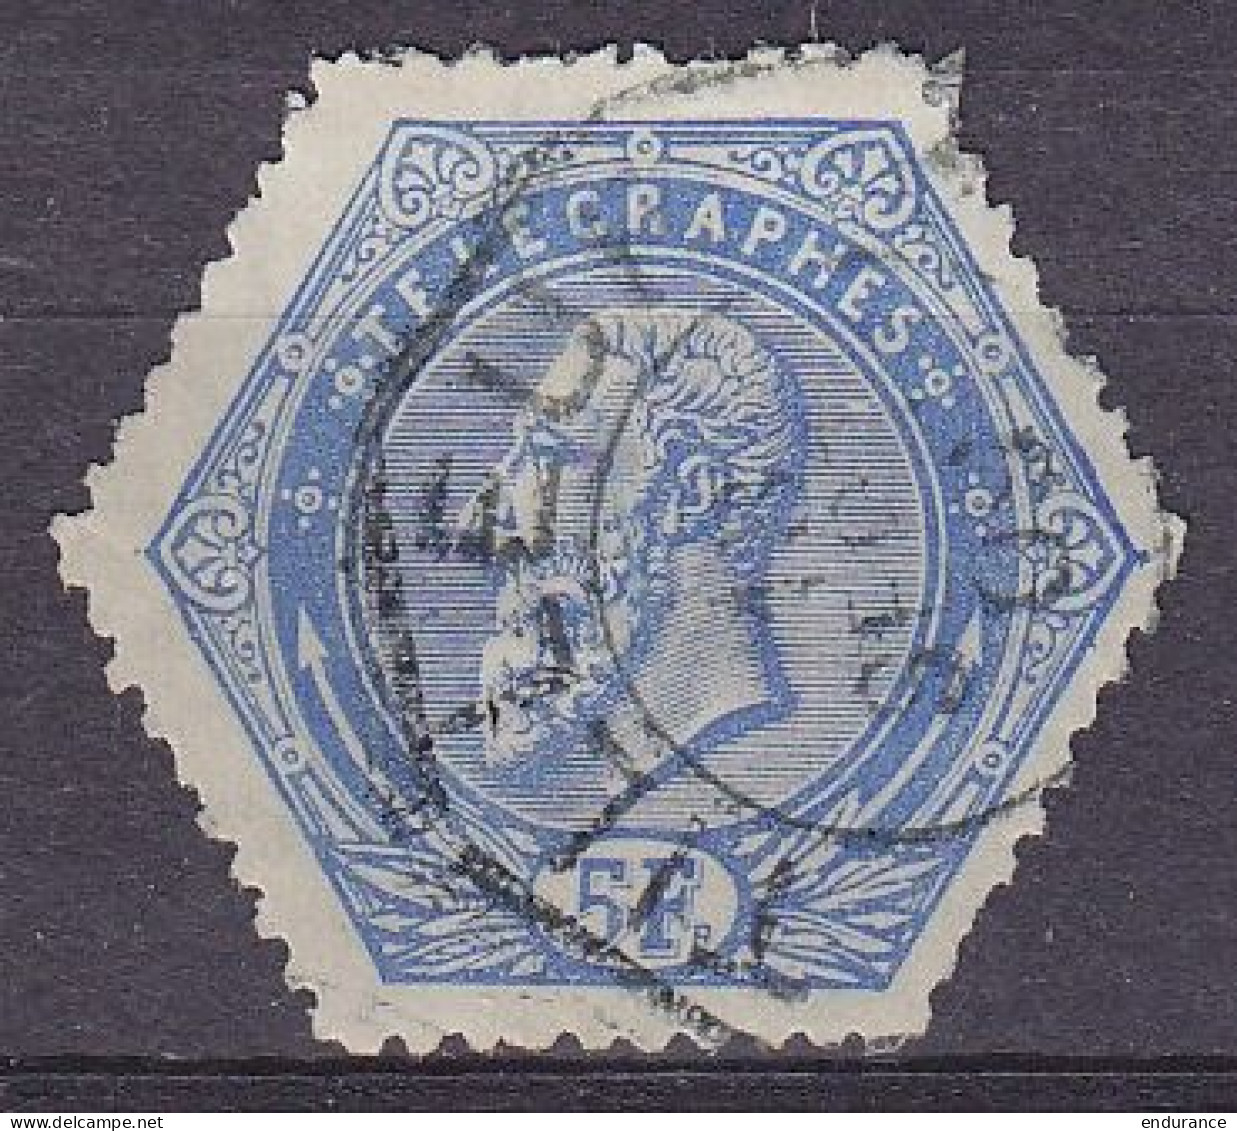 Belgique - Télégraphe TG17 (1899) 5f Bleu - Superbe Oblit. TILLEUR /18 SEPT 190? - Francobolli Telegrafici [TG]